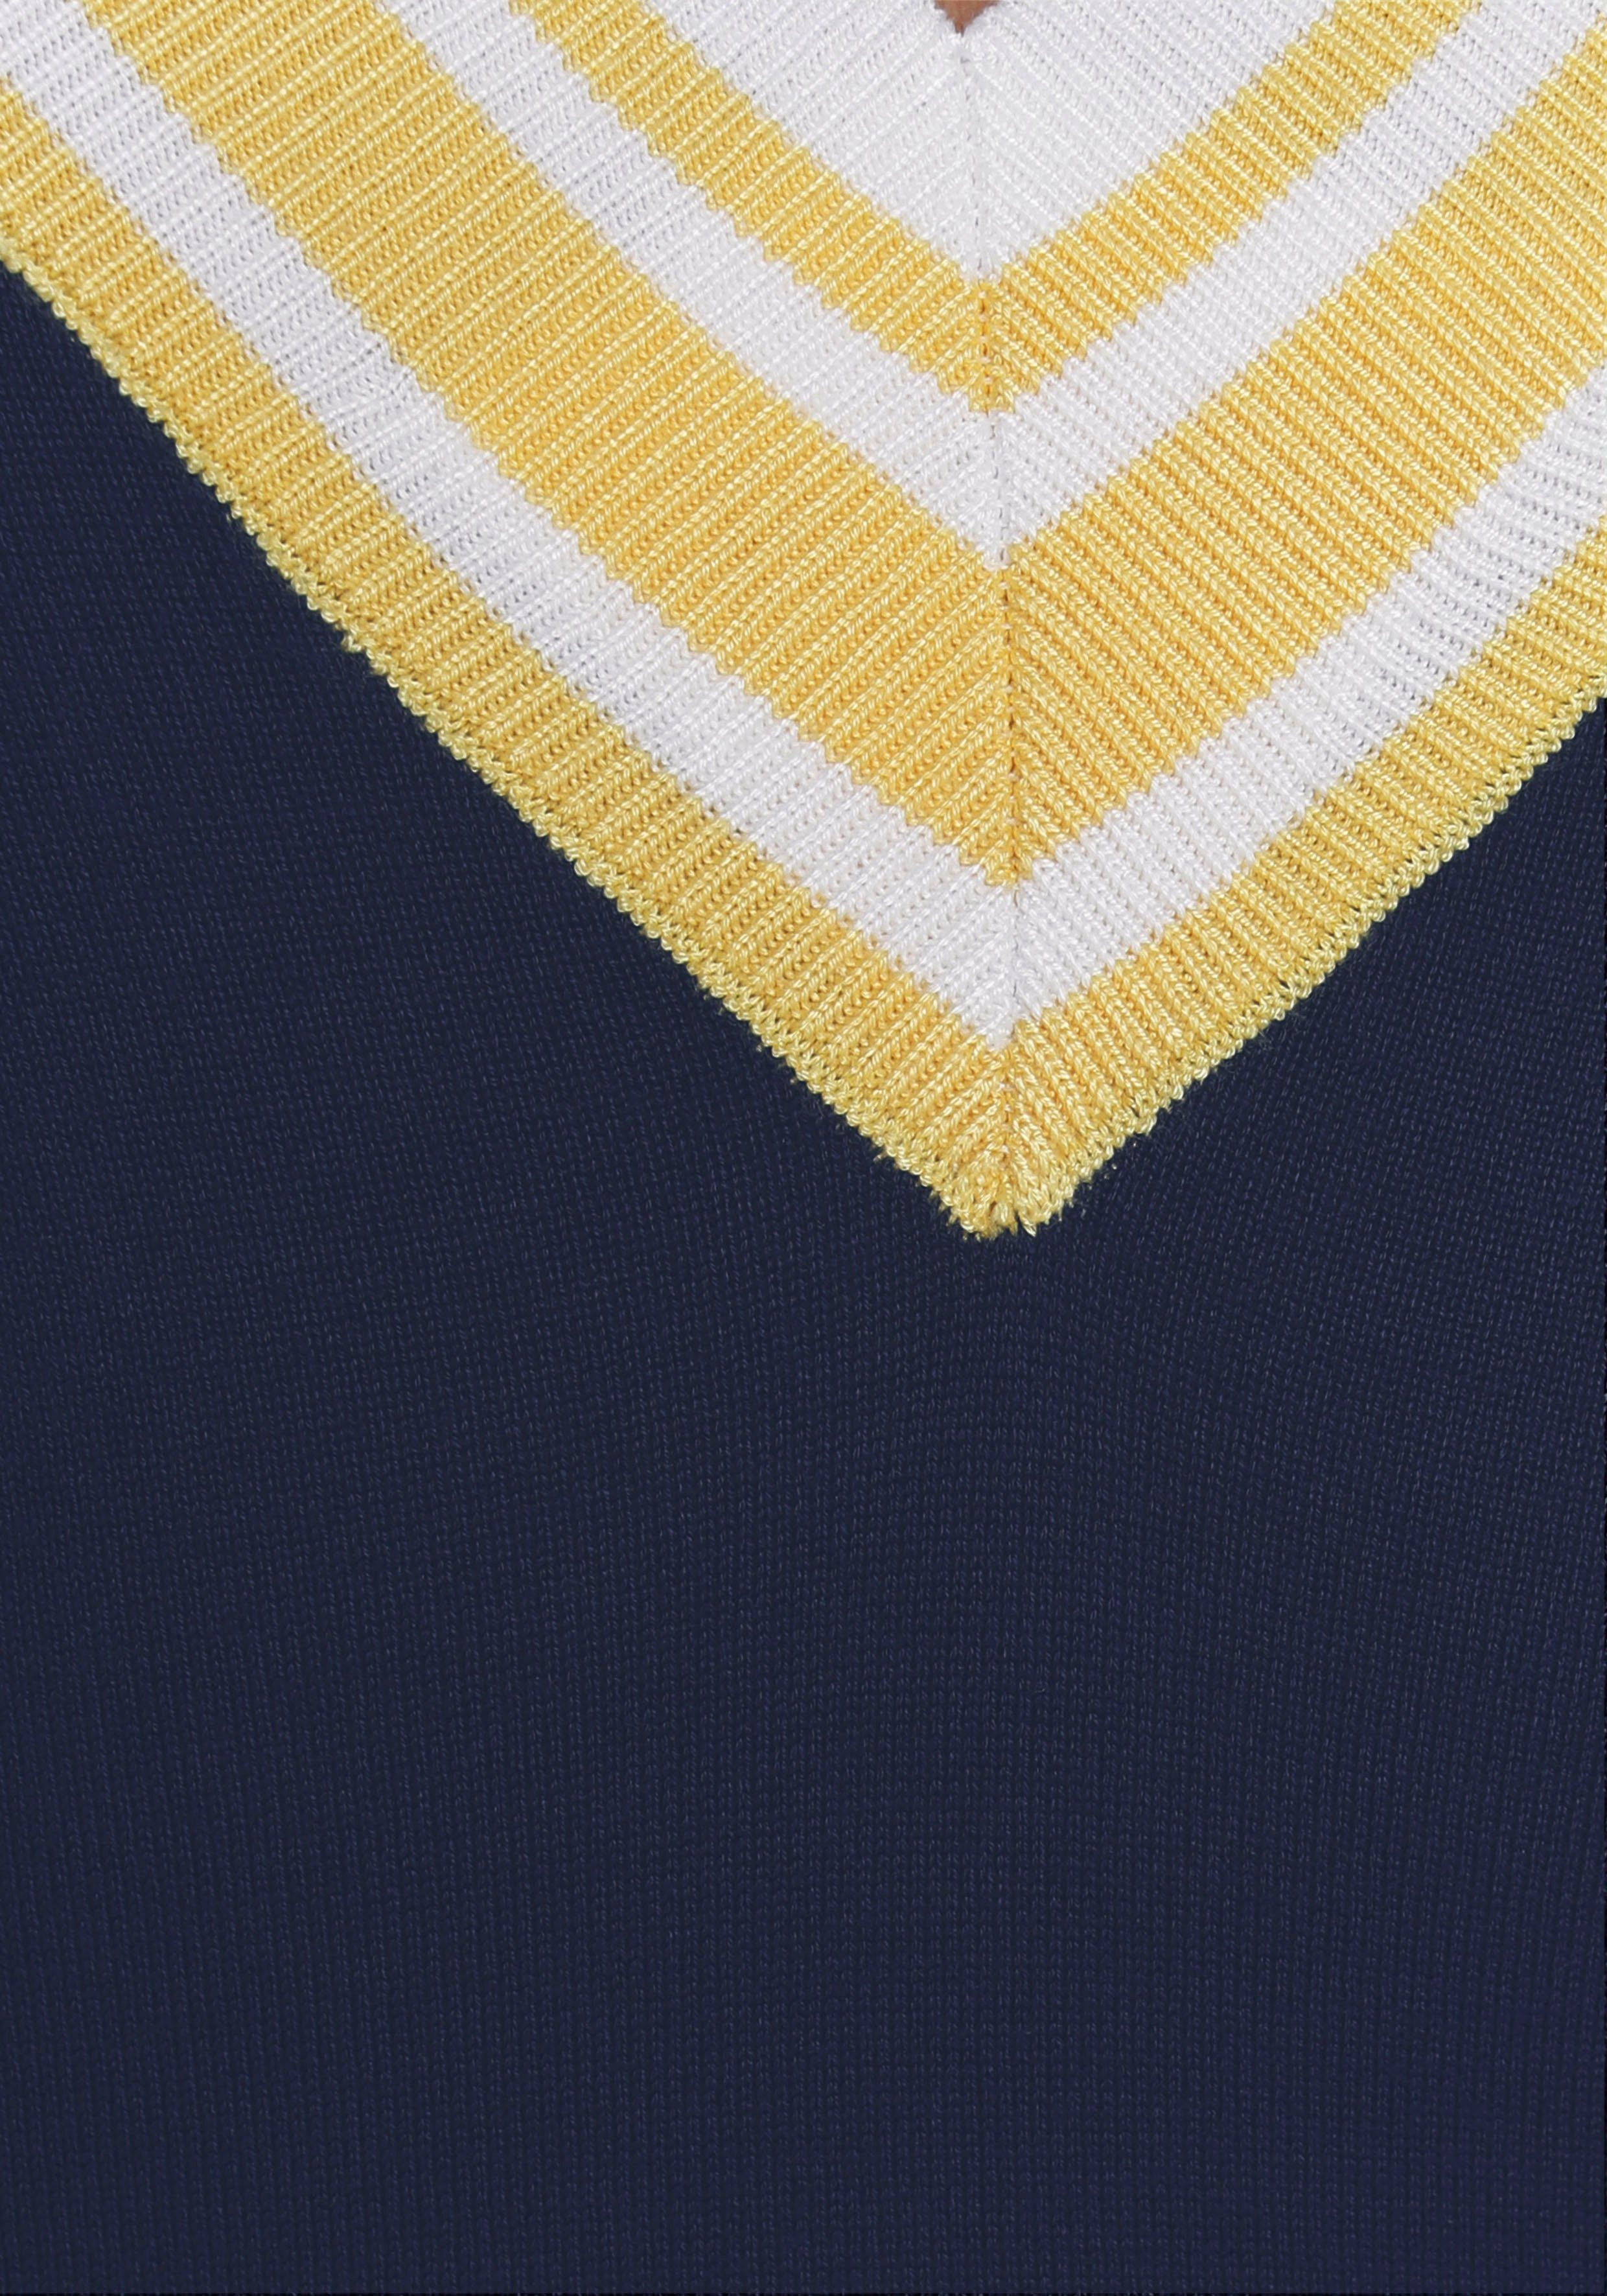 V-Ausschnitt mit tiefem AJC Kontraststreifen Strickkleid & marine-gelb